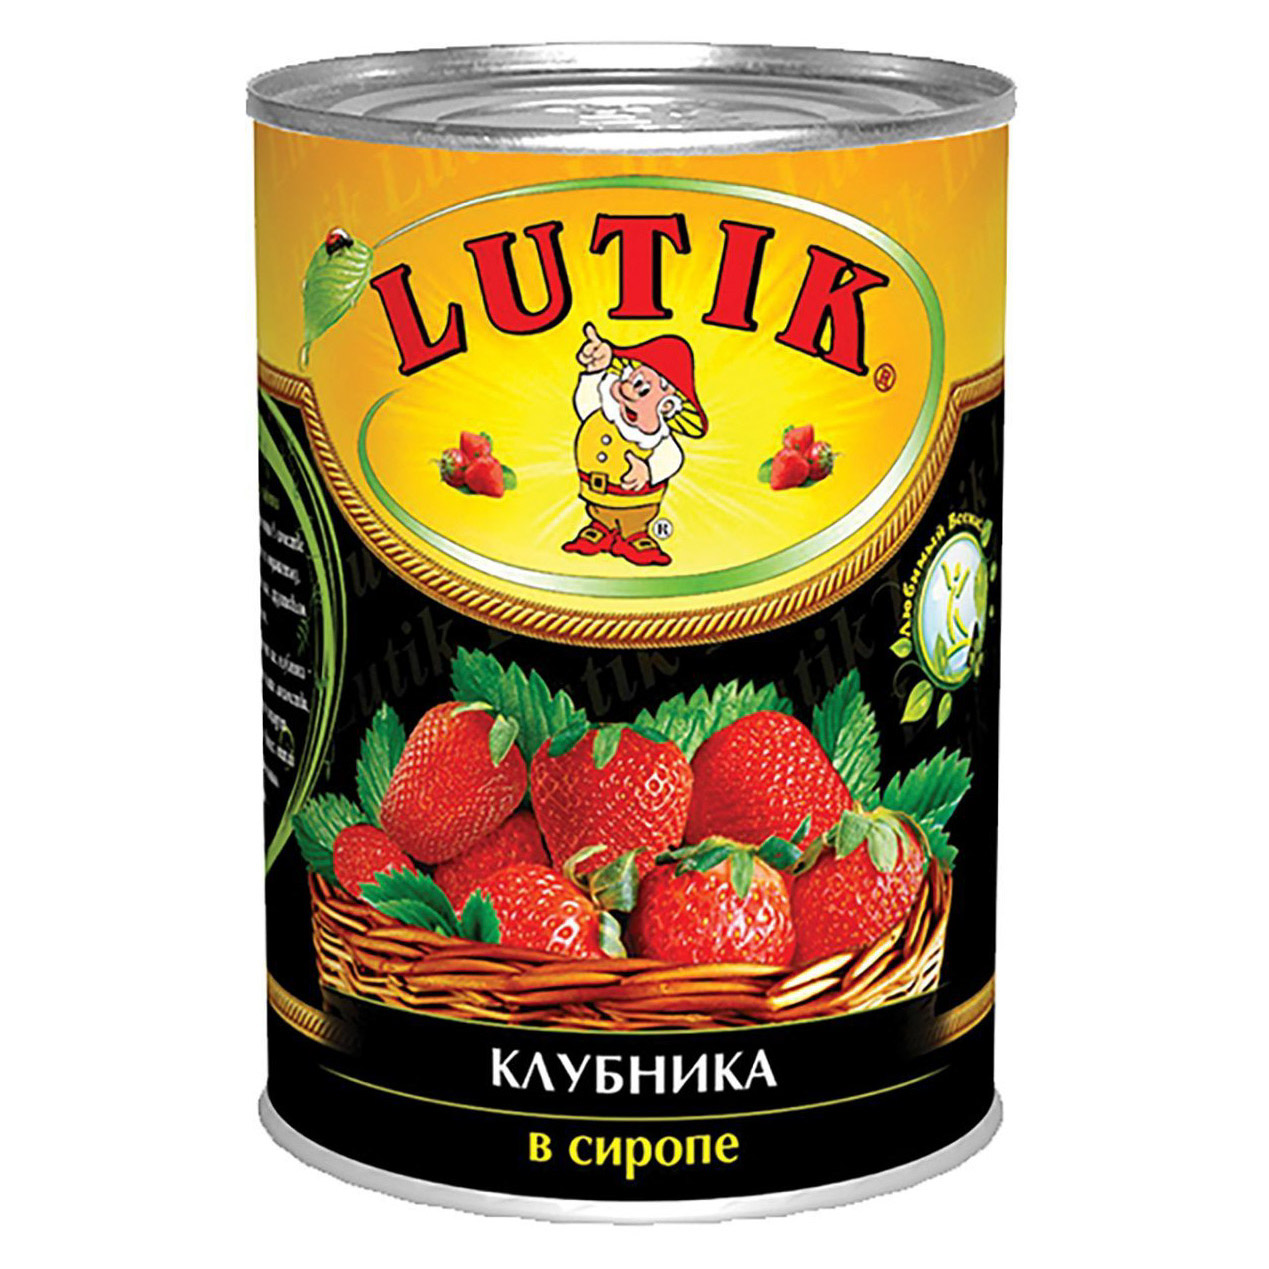 Клубника Lutik в сиропе 425 мл персики очищ половинками в сиропе ж б 820г lutik